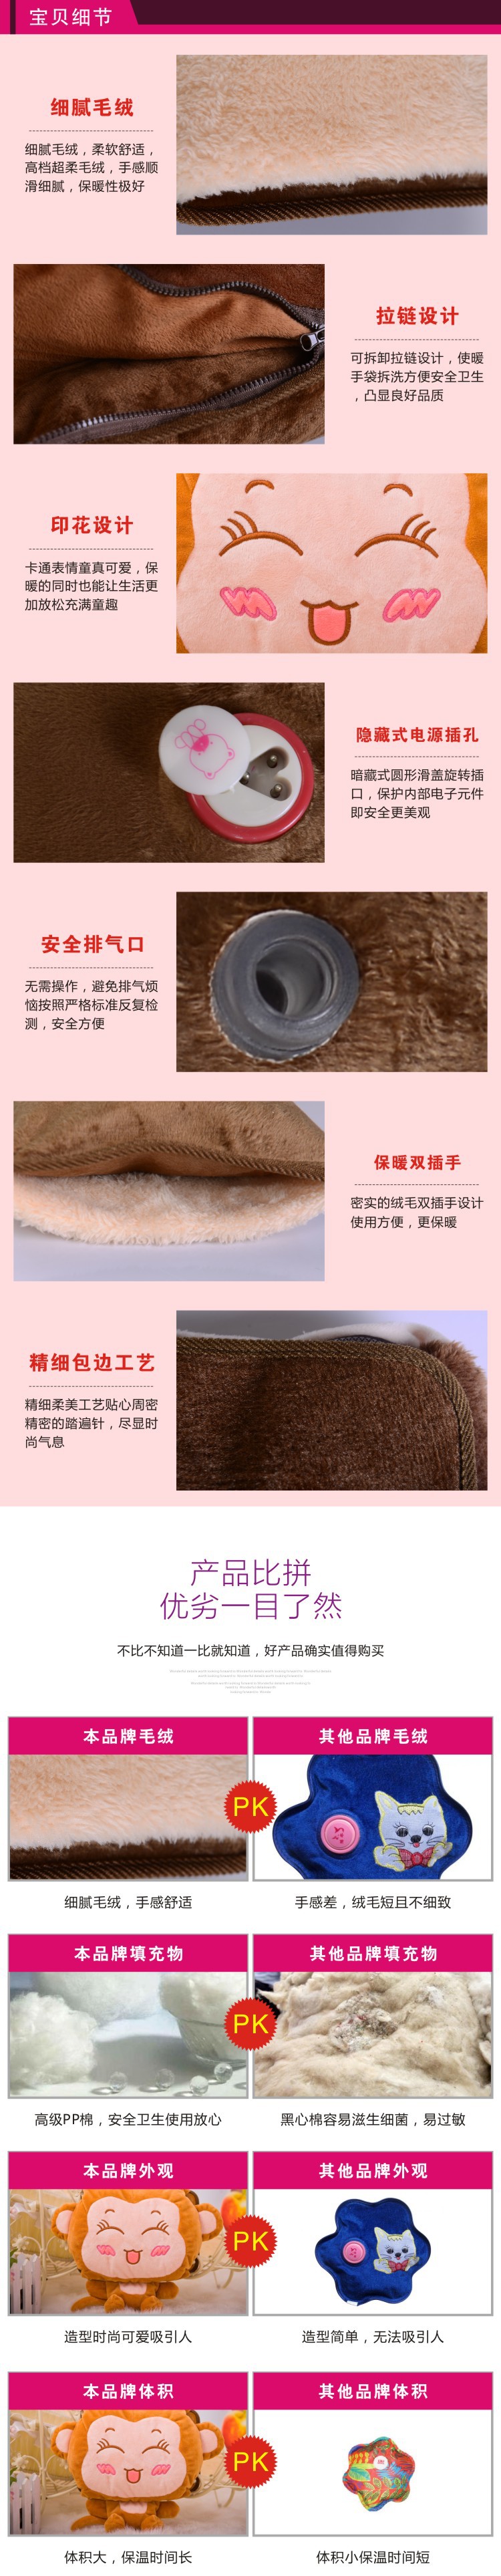 超盼暖手袋系列4細節-4